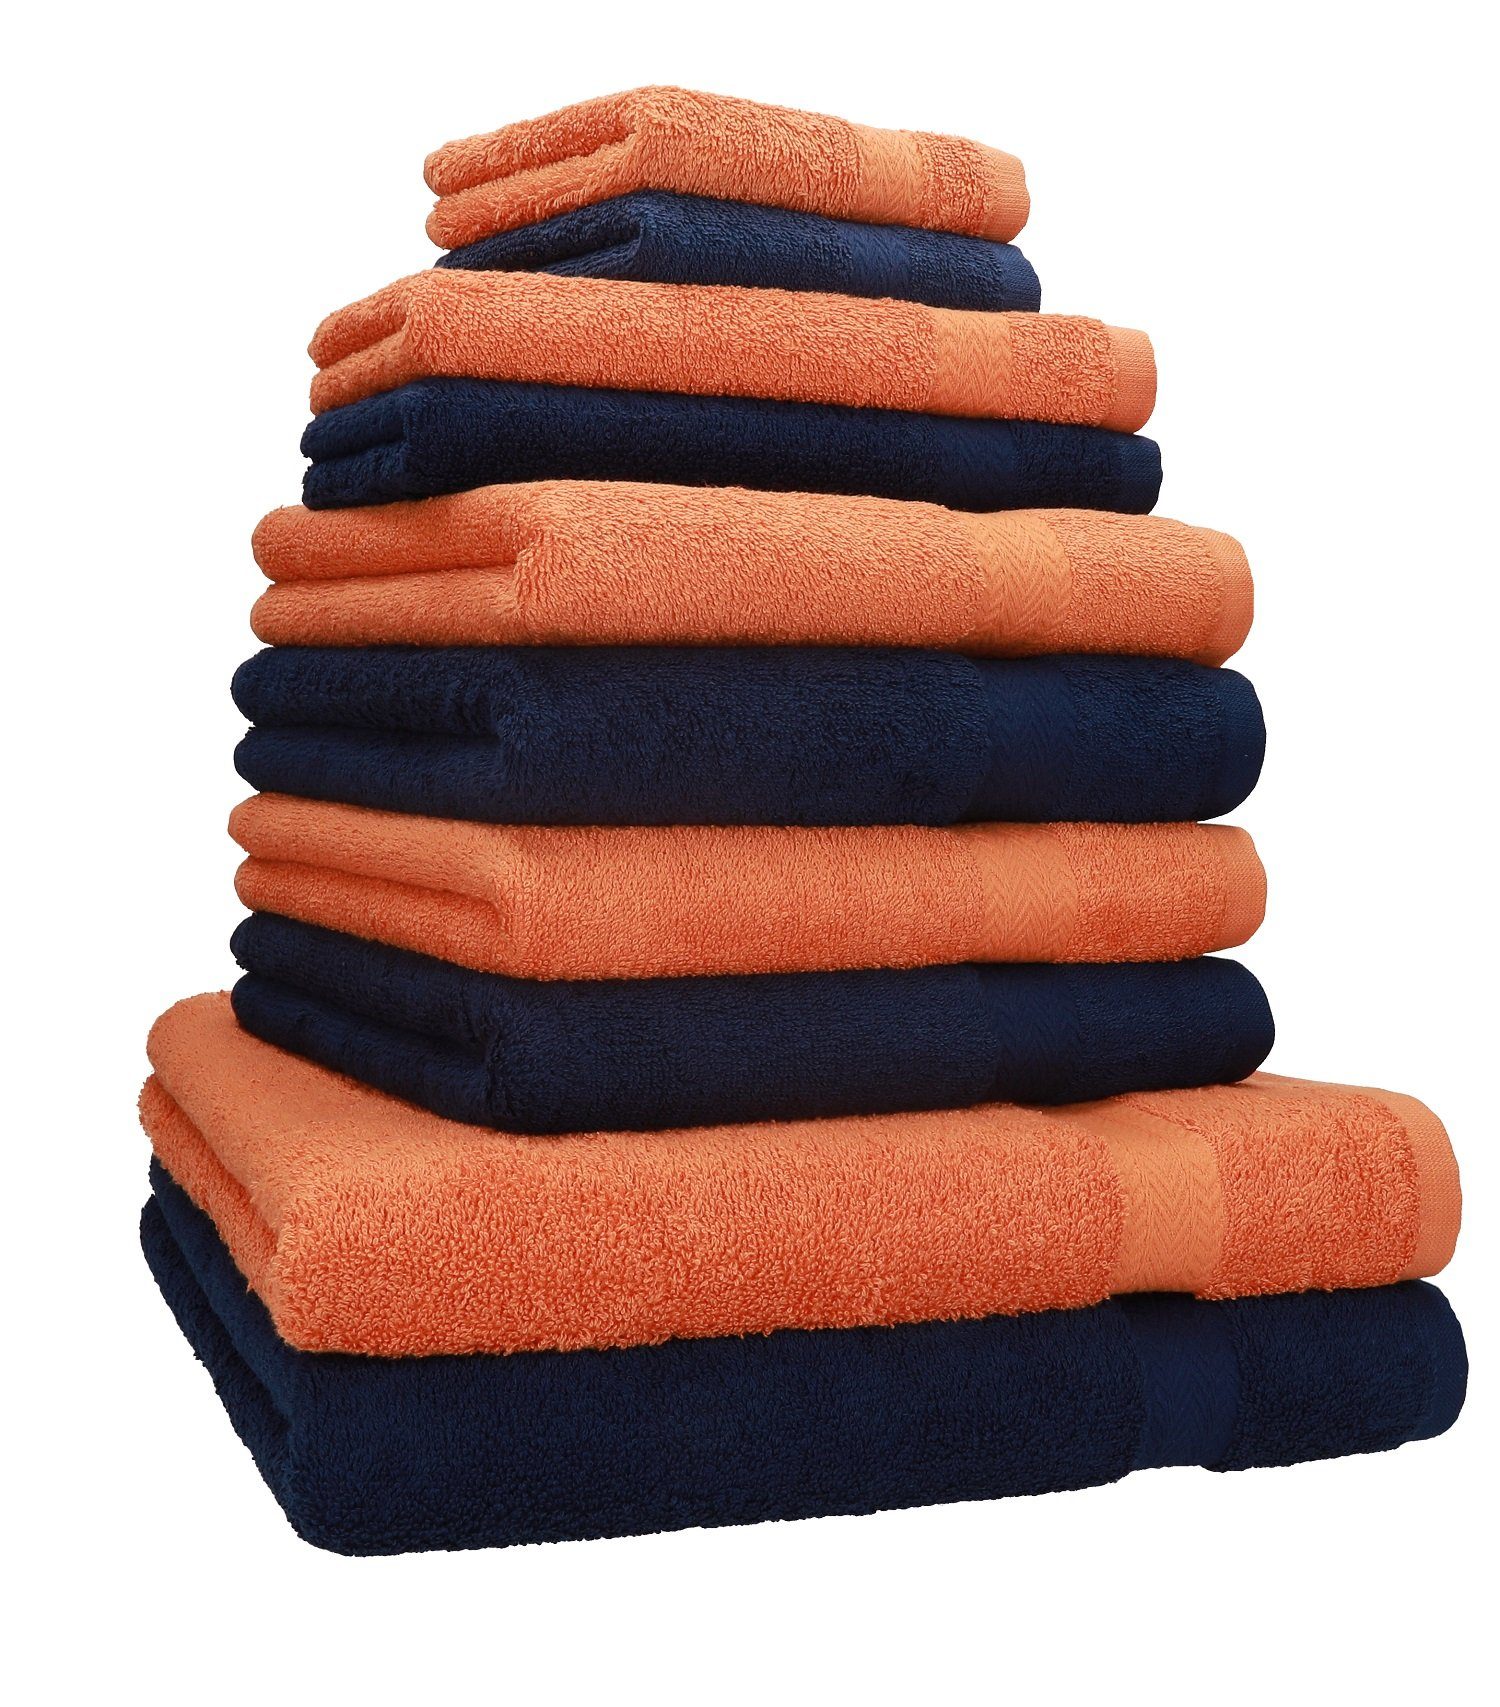 Betz Handtuch Set 10-TLG. Handtücher-Set Classic Farbe orange und dunkelblau, 100% Baumwolle | Handtuch-Sets